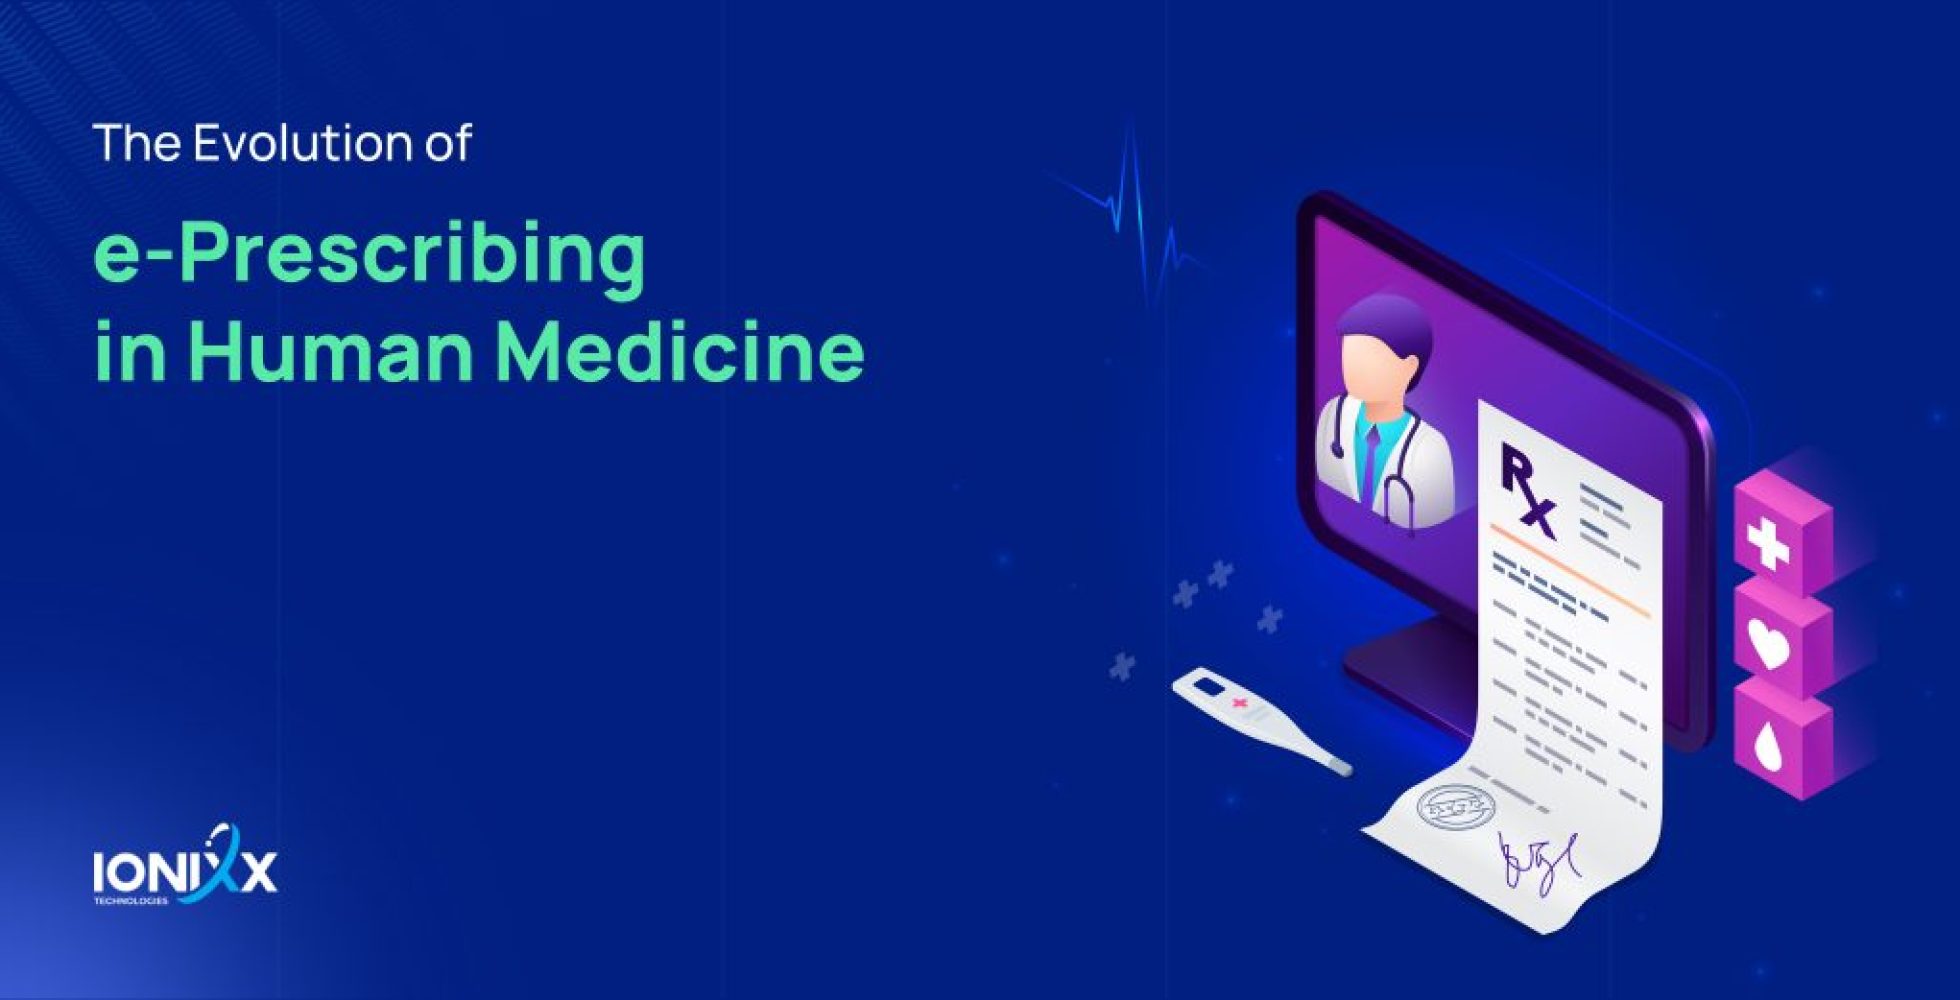 The Evolution of e-prescribing in Human Medicine